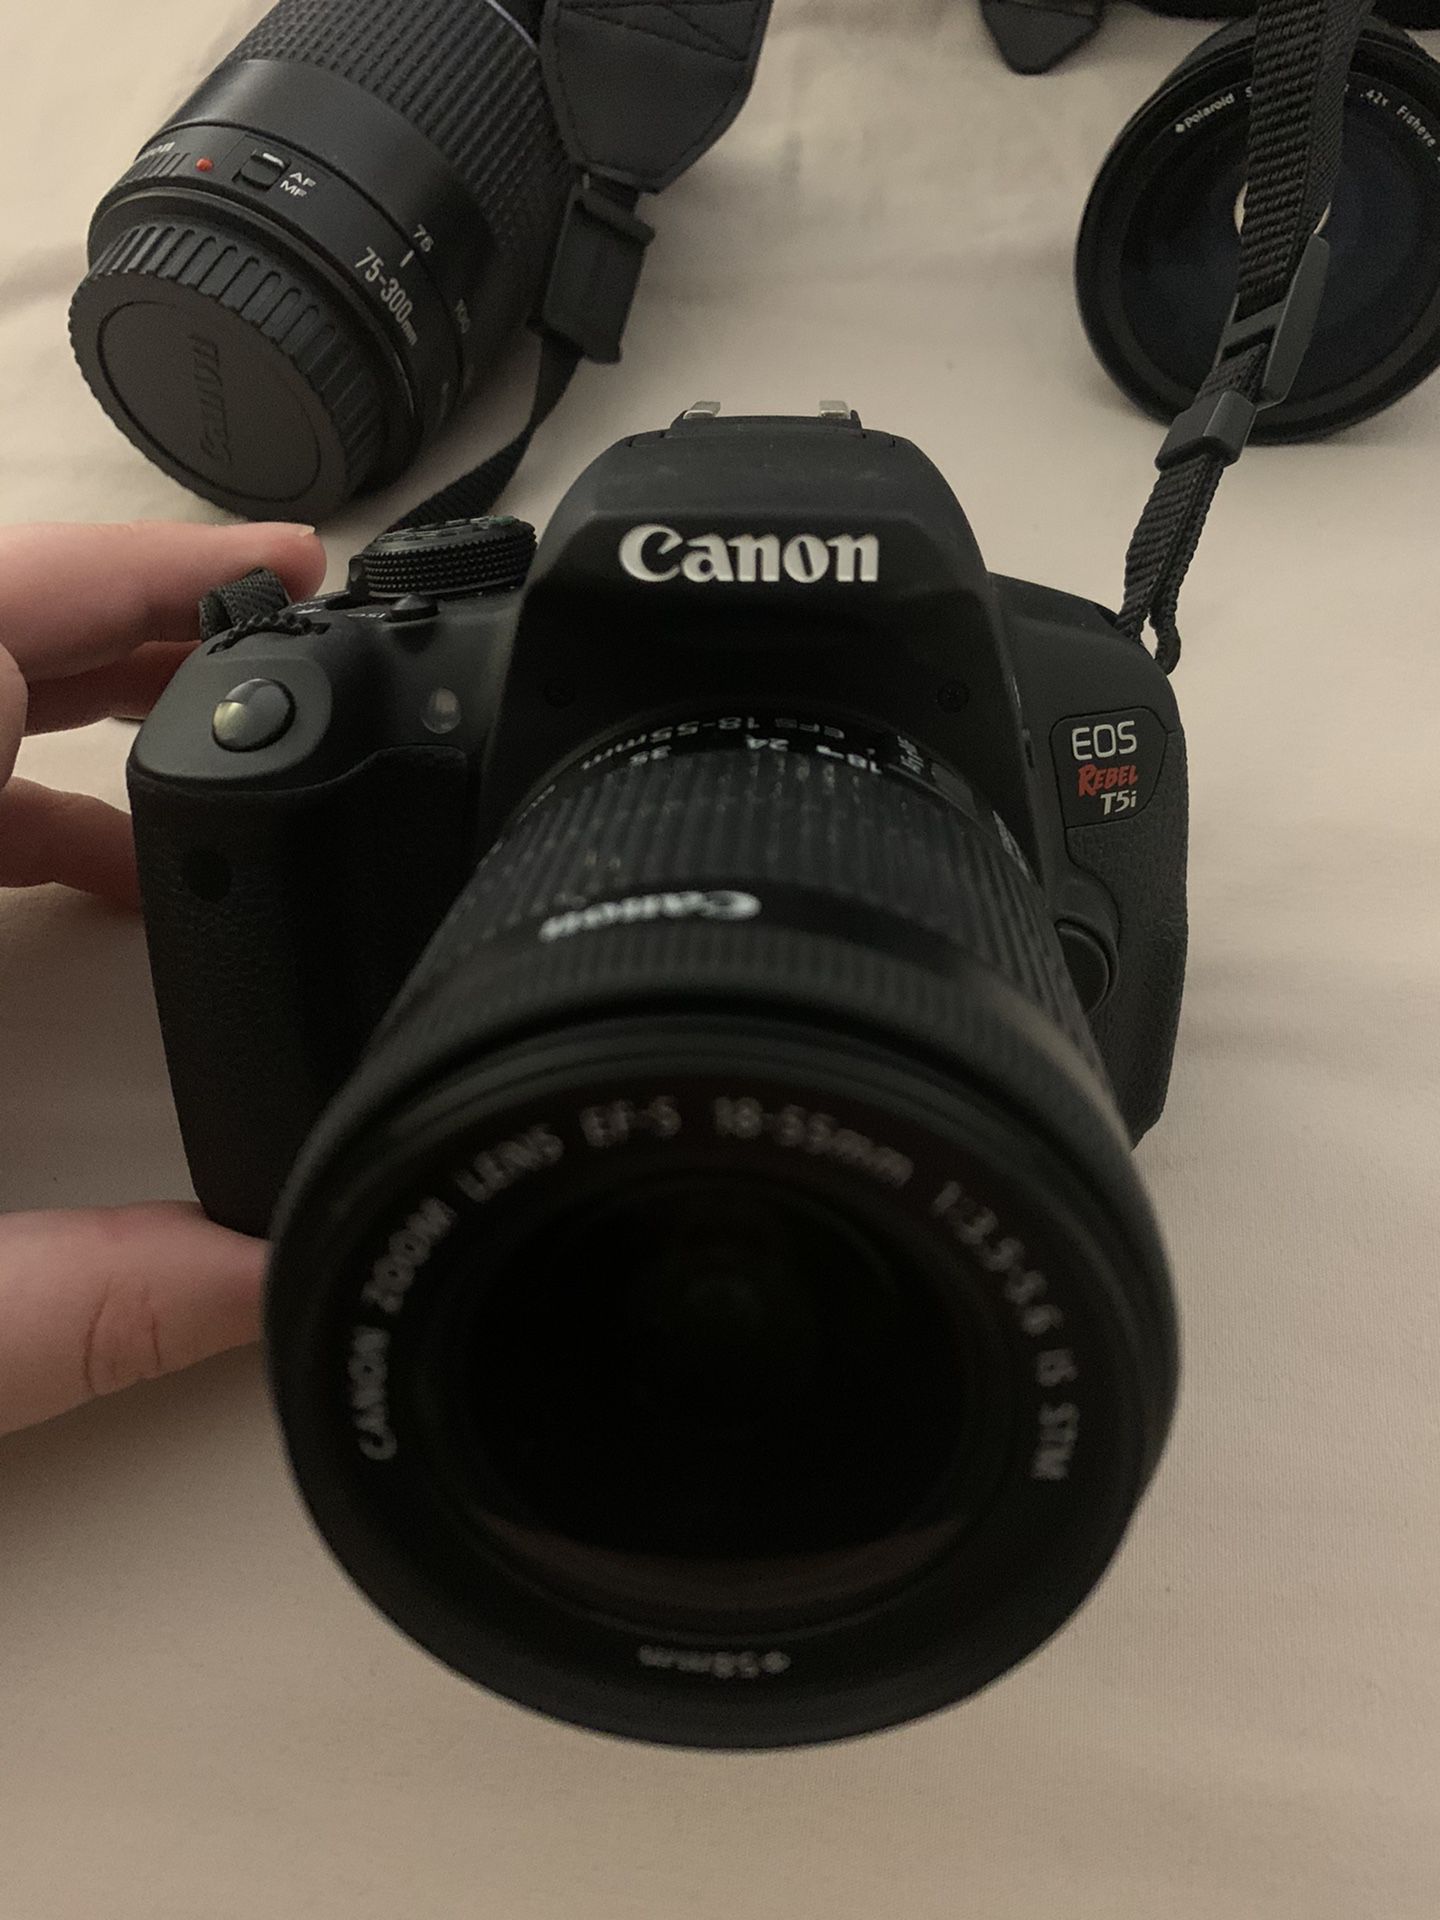 Canon Camera with accessories